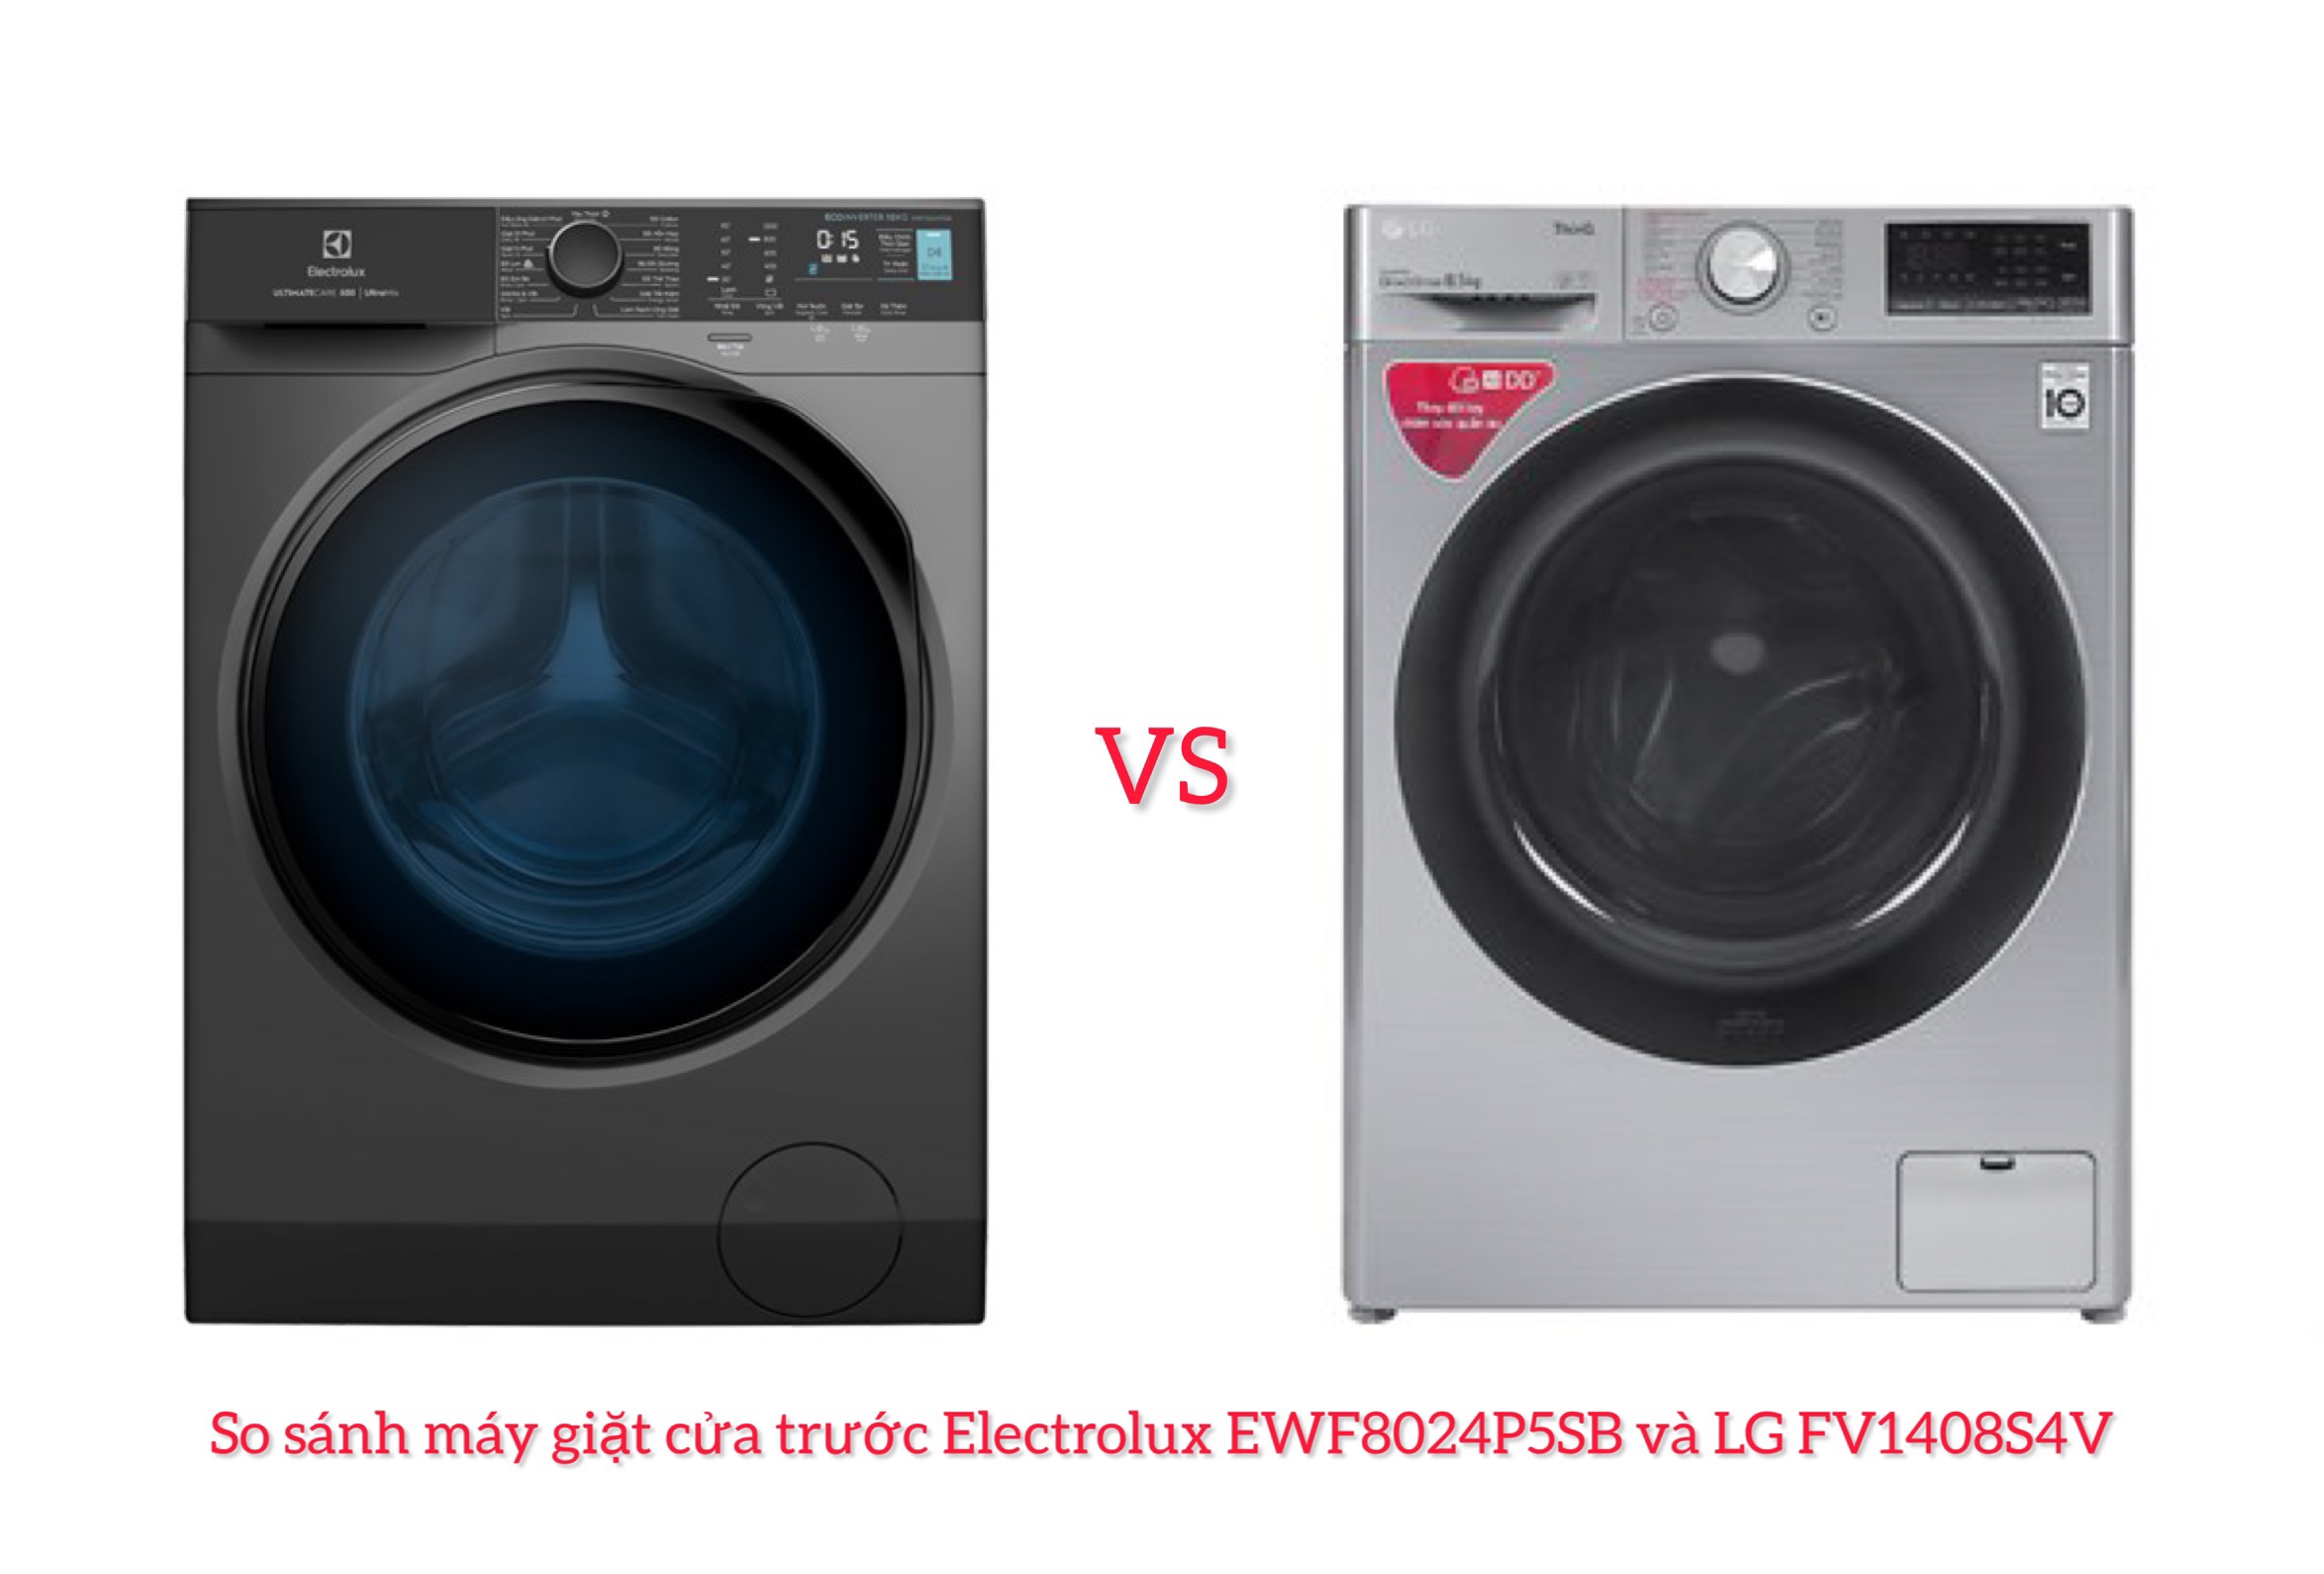 So sánh máy giặt cửa trước Electrolux EWF8024P5SB và LG FV1408S4V